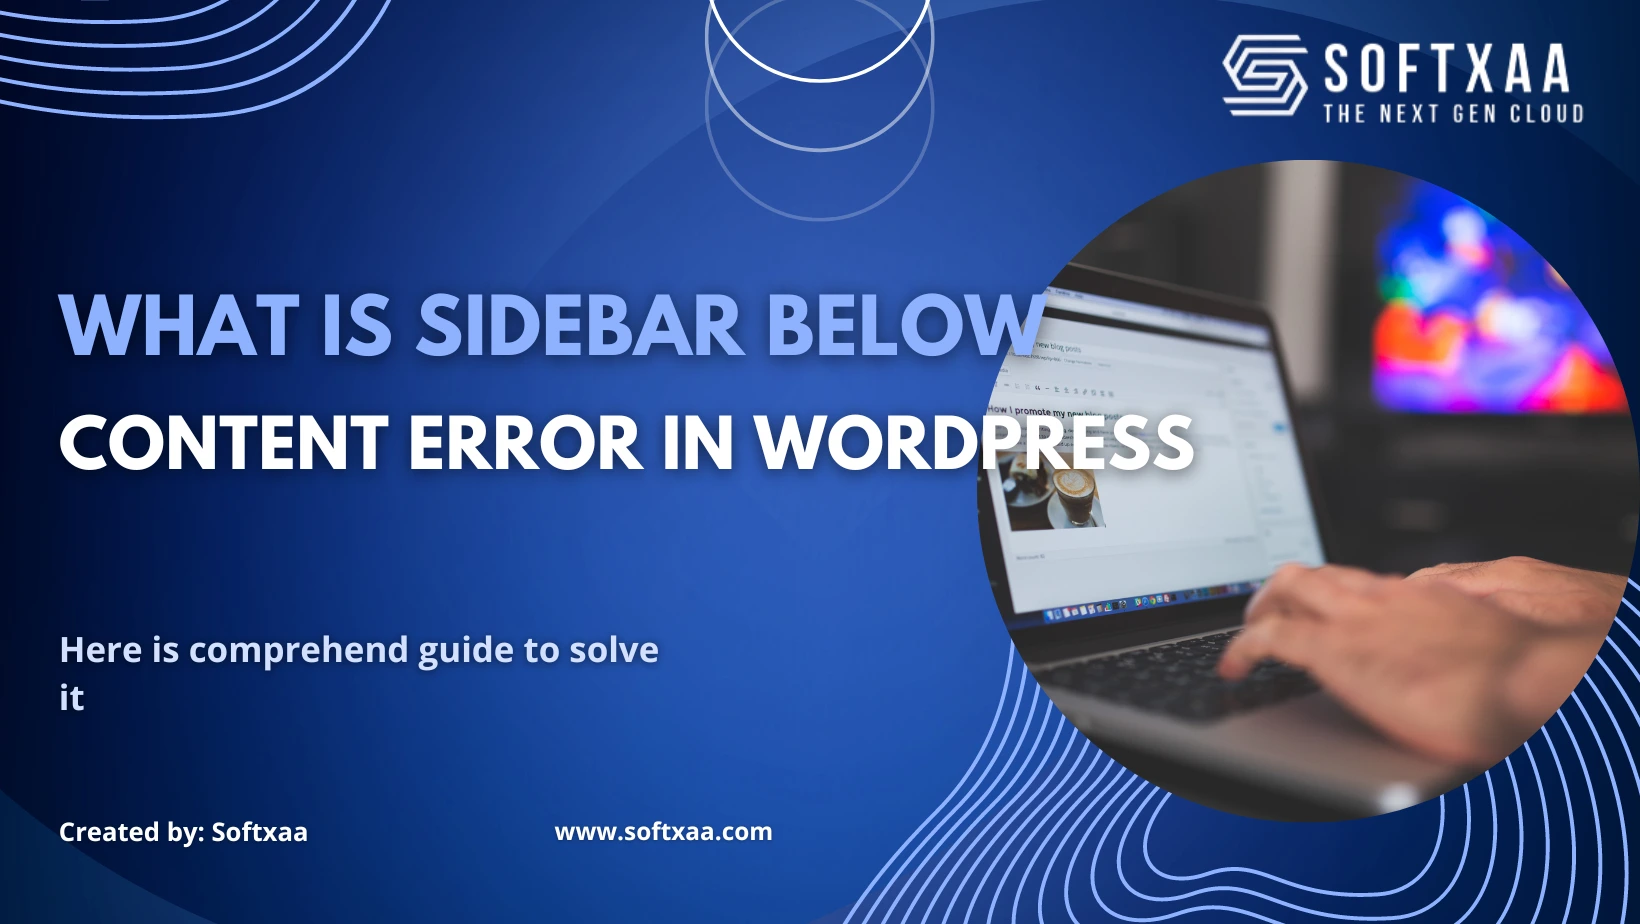 What is Sidebar Below Content Error in WordPress?